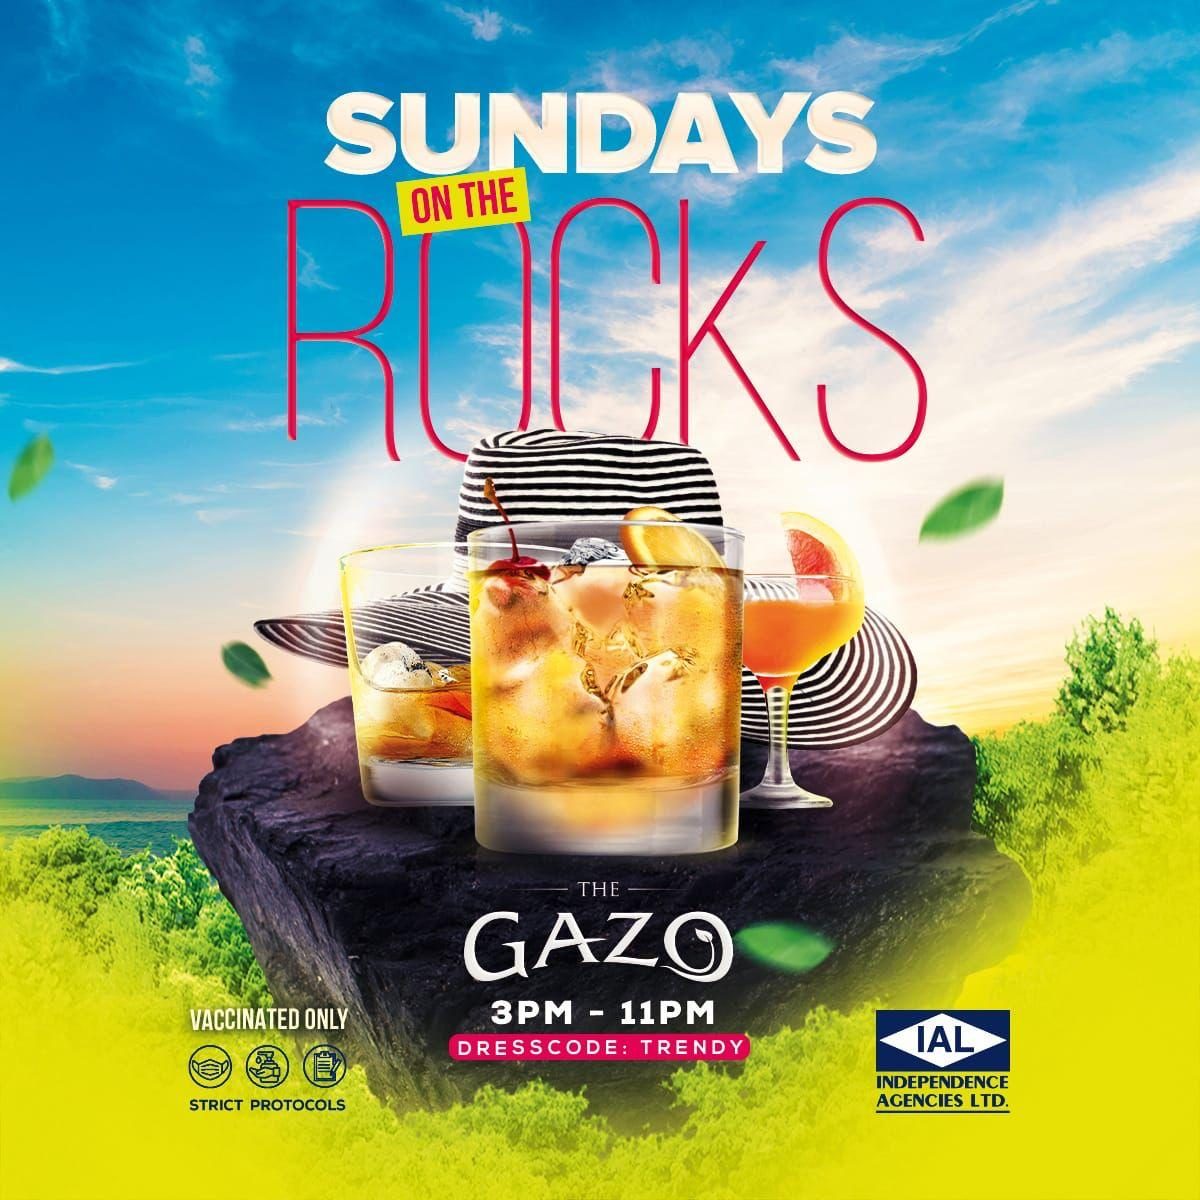 Sundays on the Rocks @ The Gazo